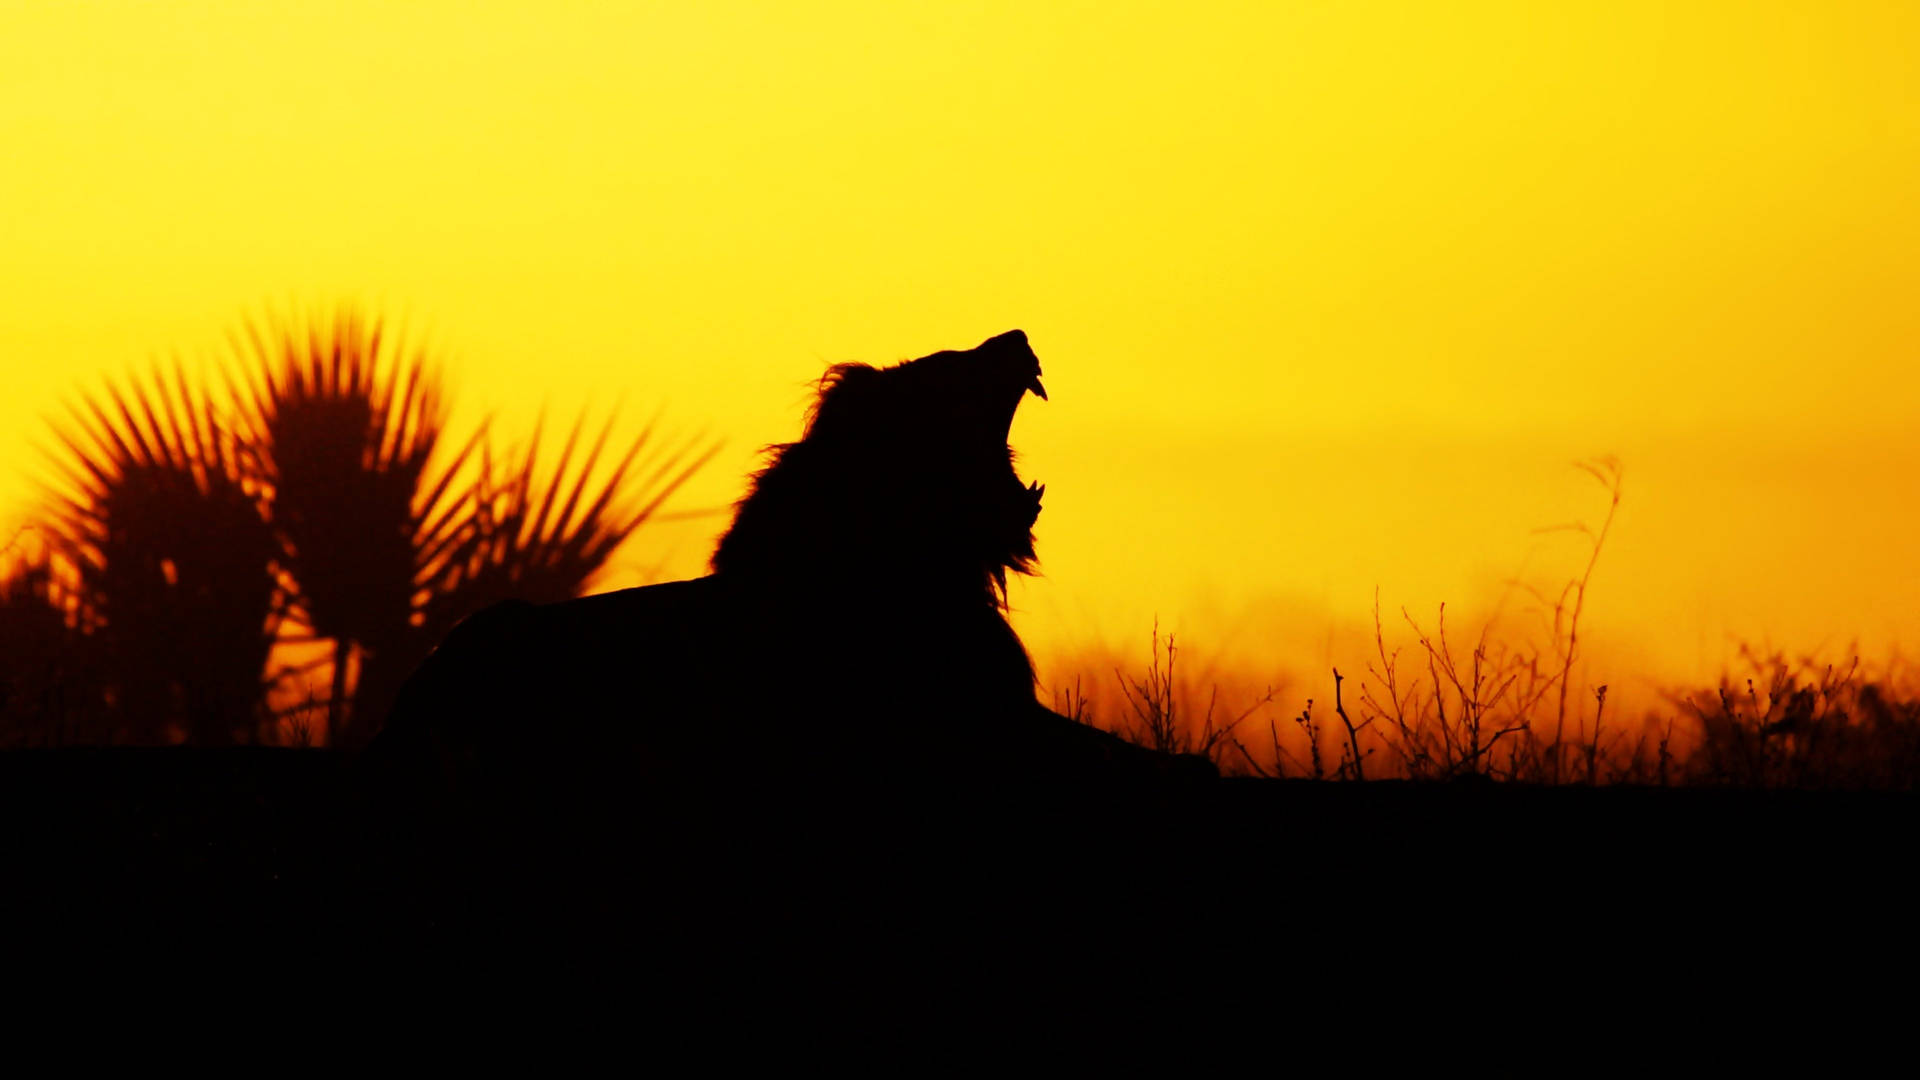 4k Ultra Hd Lions Roaring Silhouette